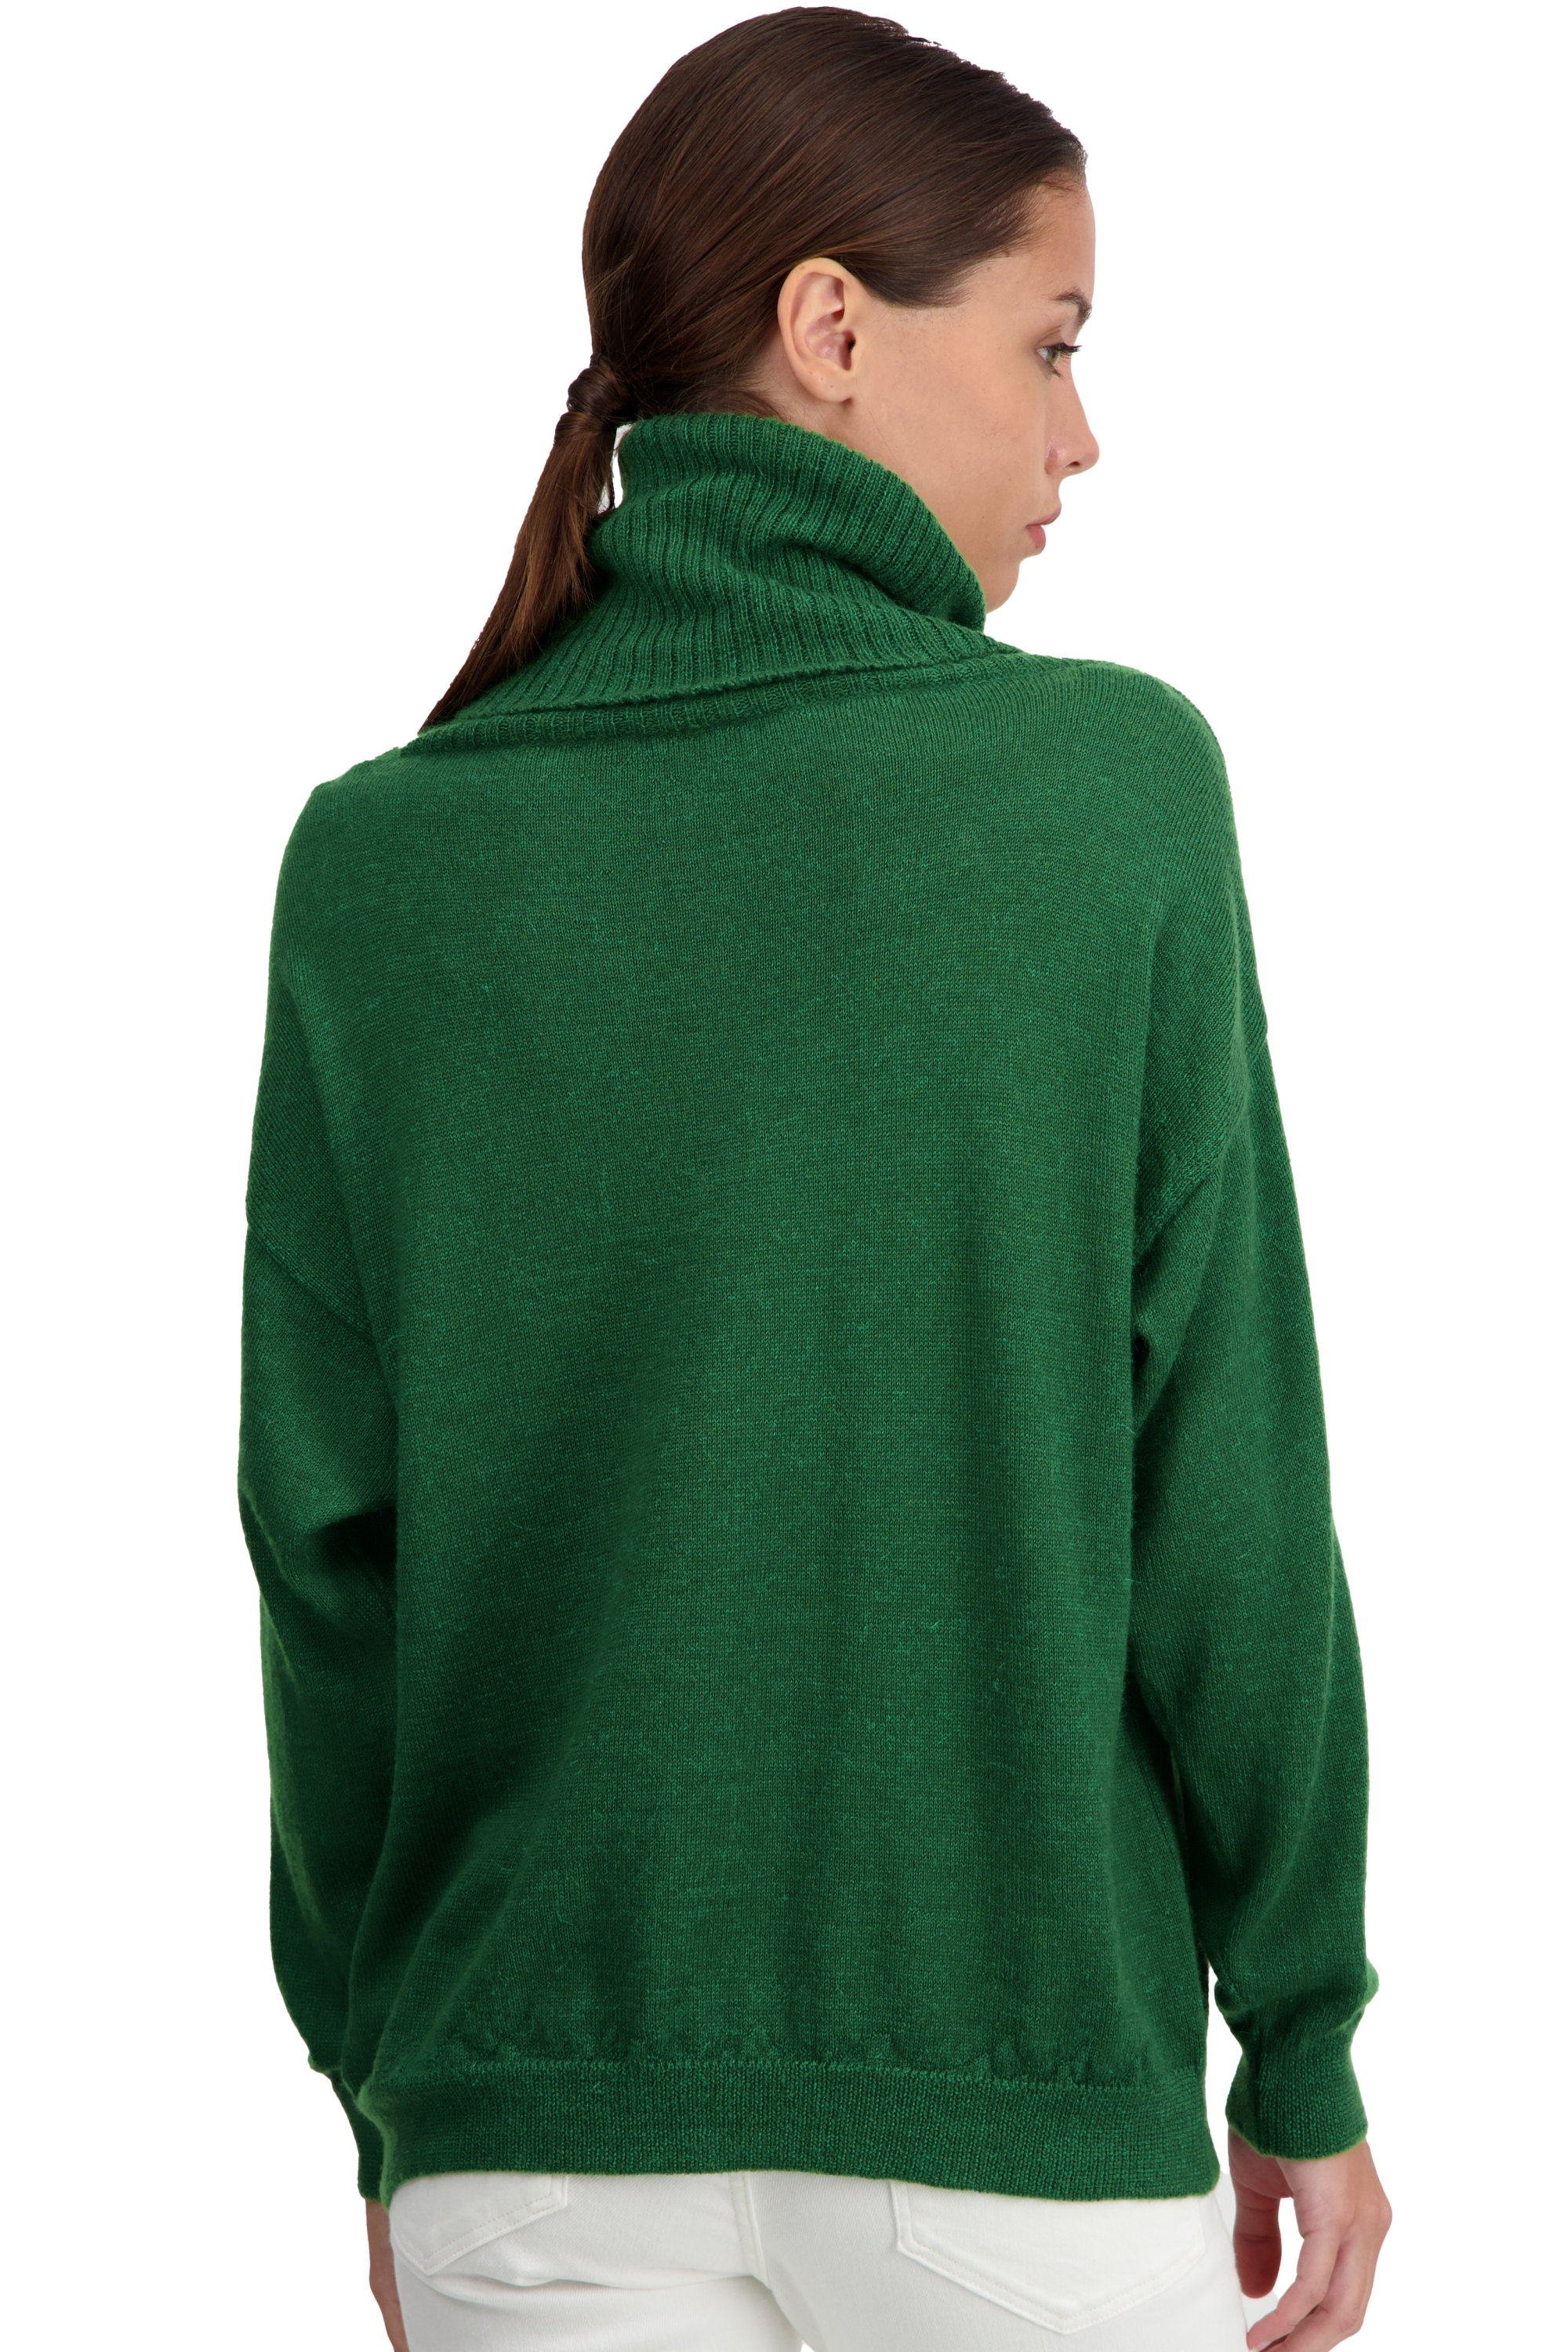 Baby Alpaca dames kasjmier pullover met kol tanis green leaf xs